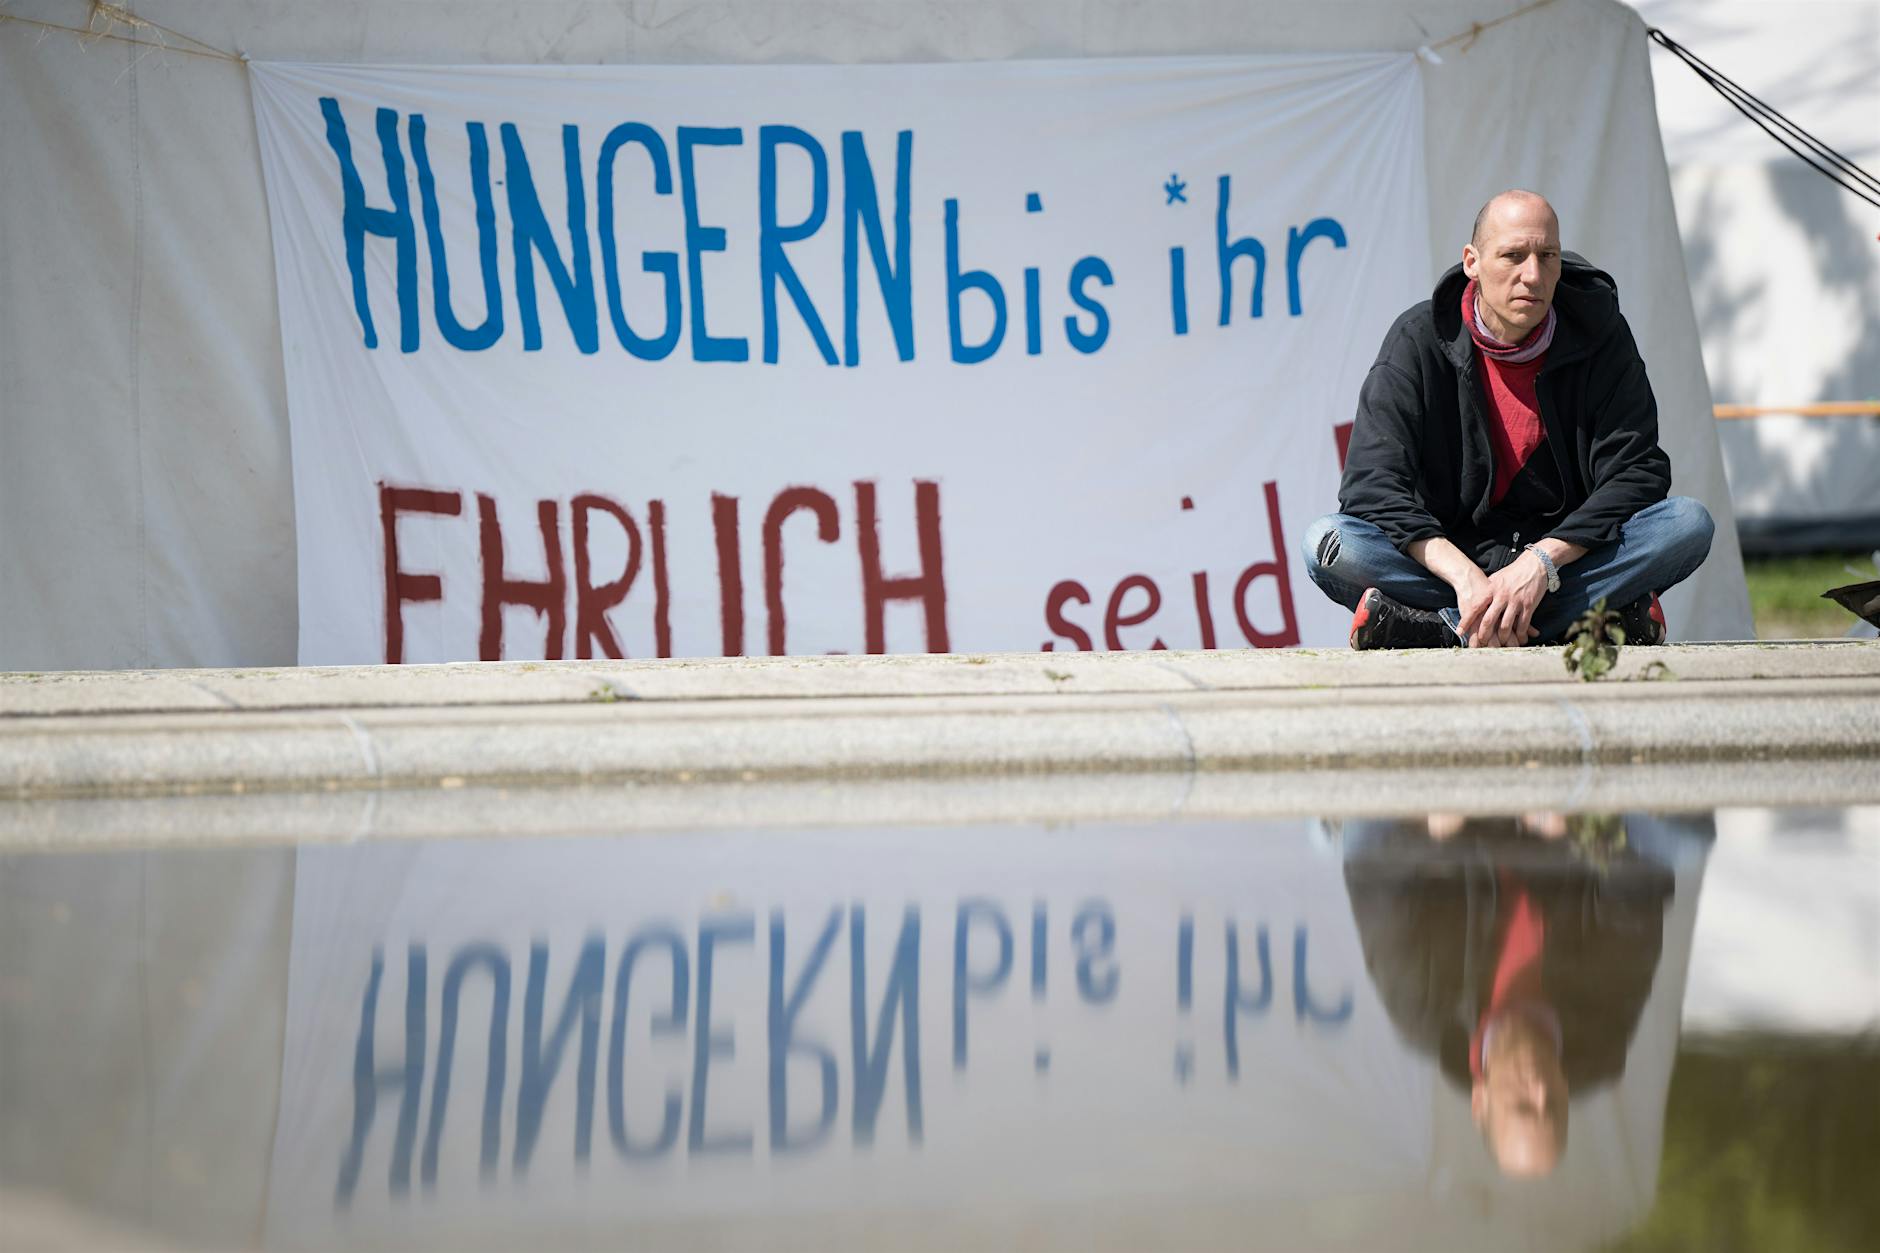 Hungerstreik-Protestcamp in Berlin: Teilnehmer in kritischem Zustand